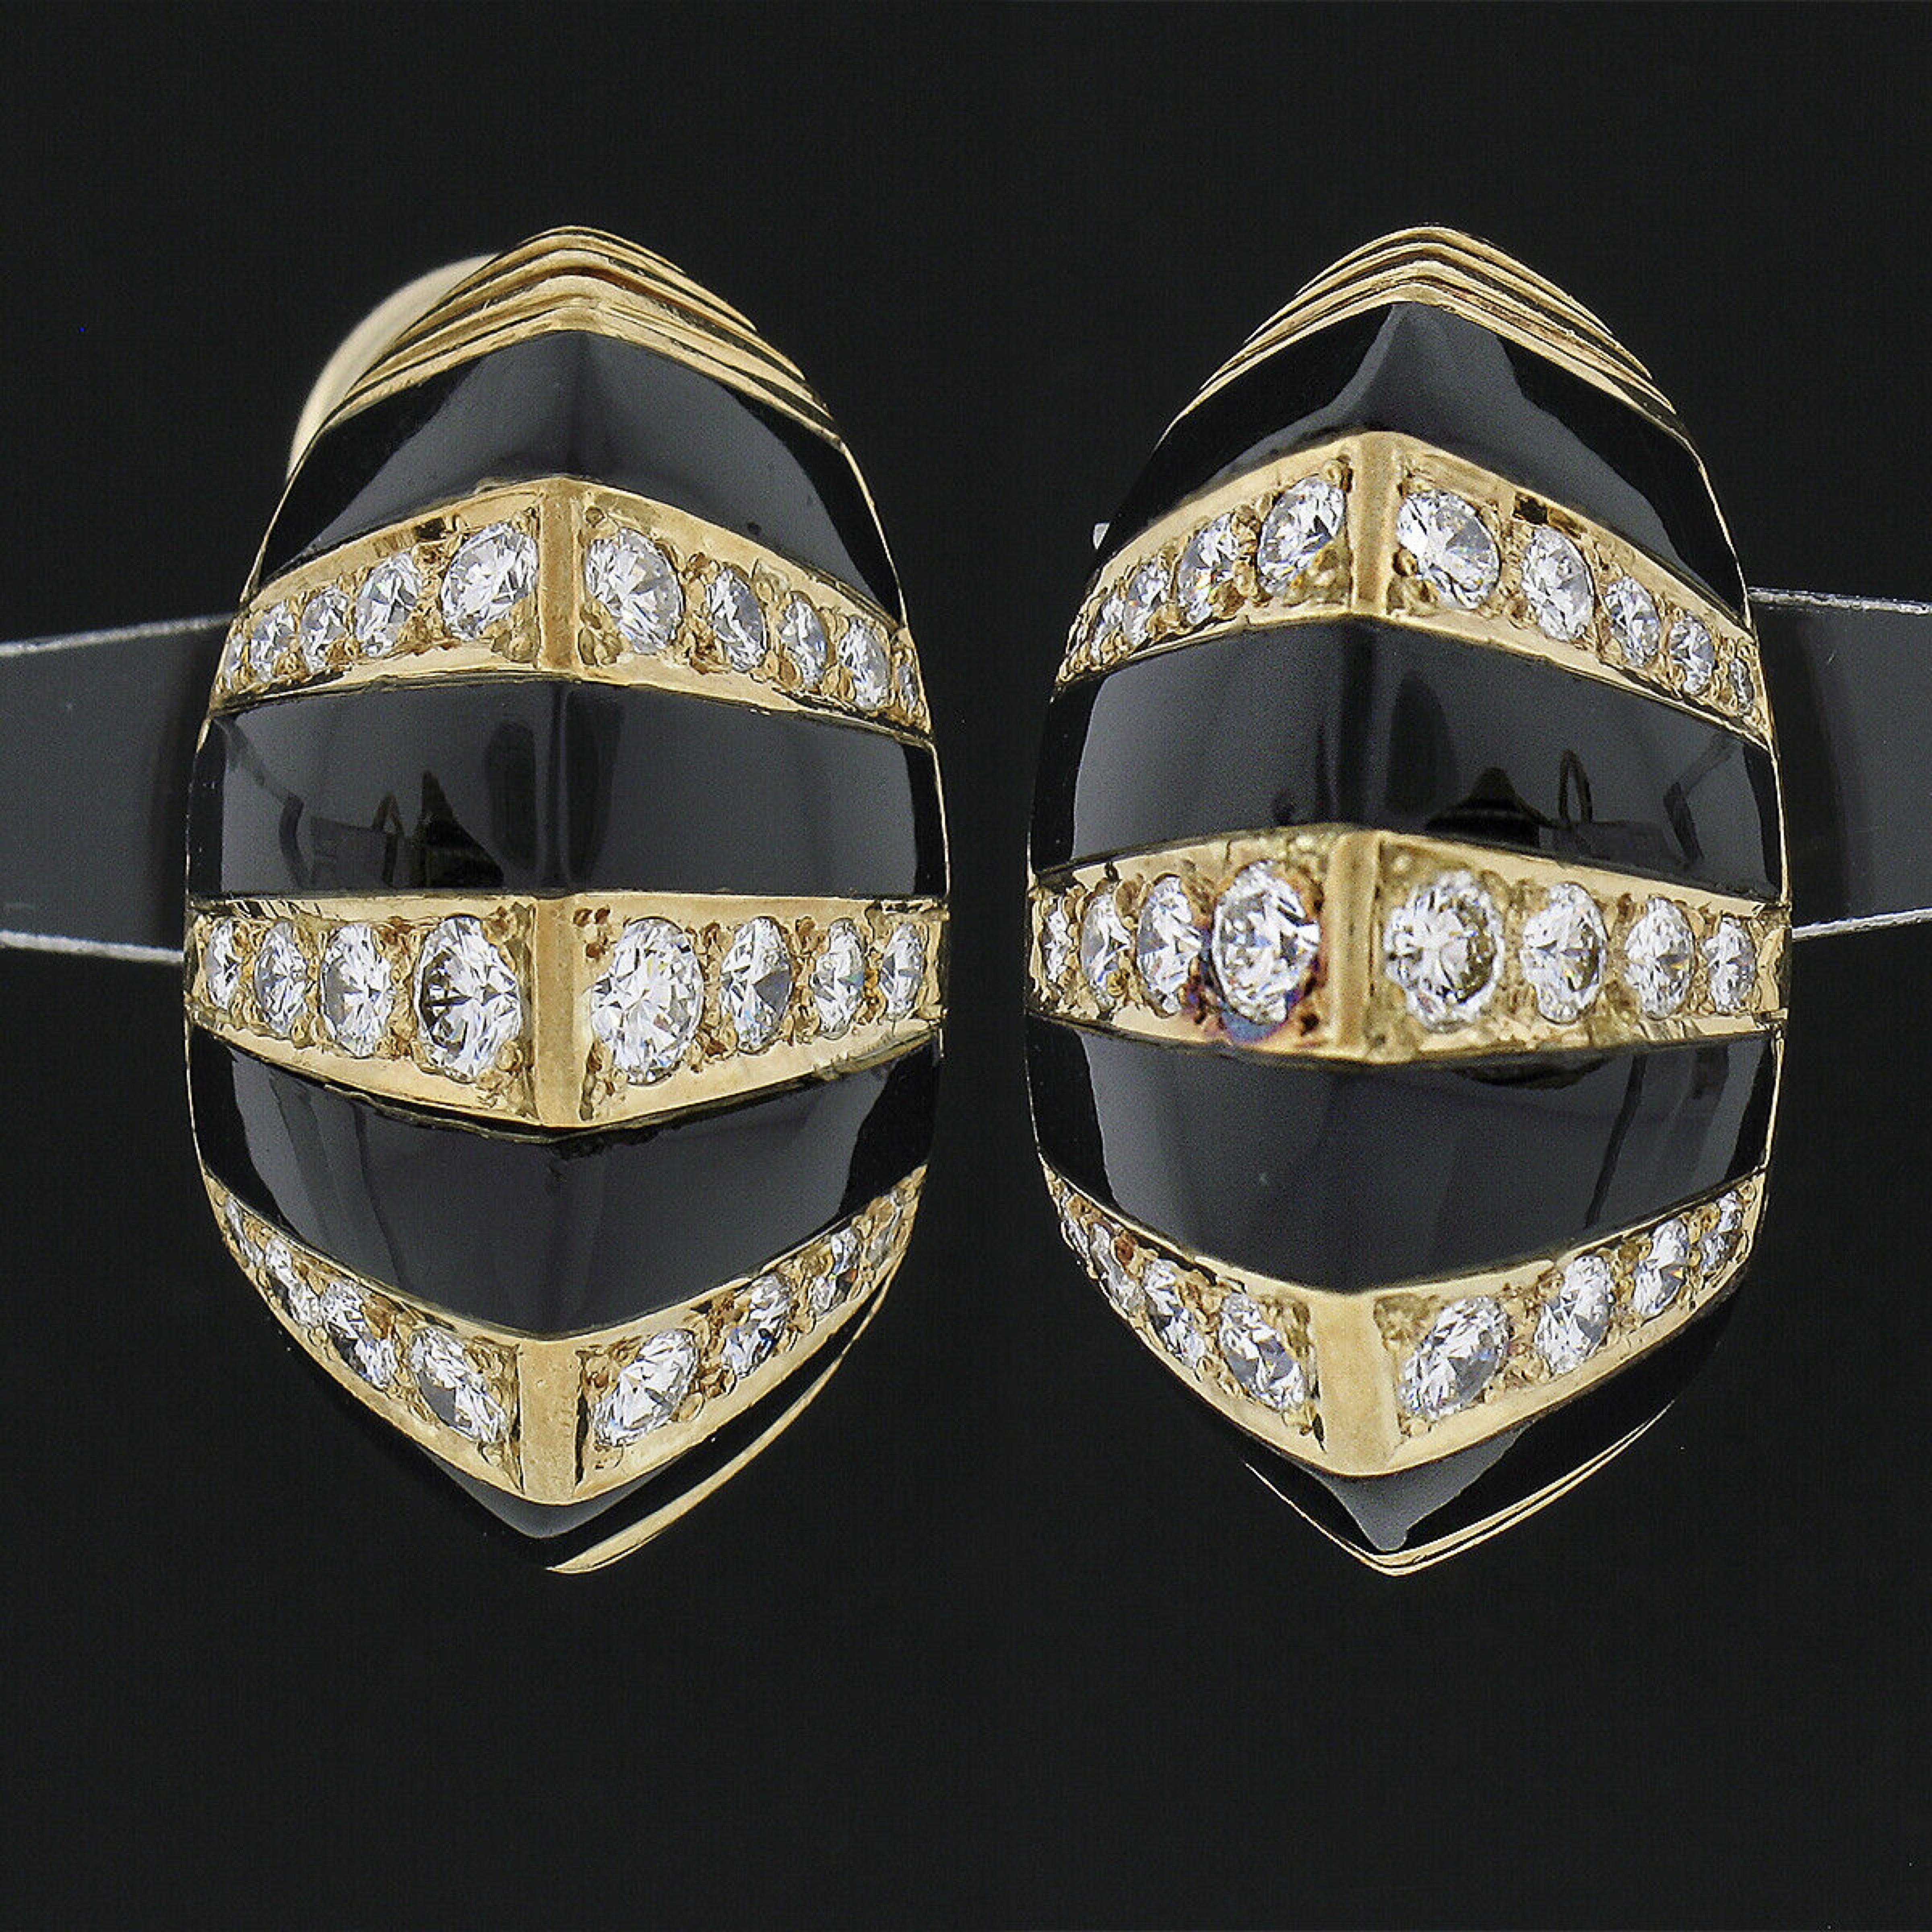 Ces remarquables boucles d'oreilles vintage sont fabriquées en or jaune massif 18 carats et présentent un bouton bombé qui alterne avec de fines pierres précieuses en onyx noir et des diamants sur l'ensemble. Leur élégant design rayé est constitué